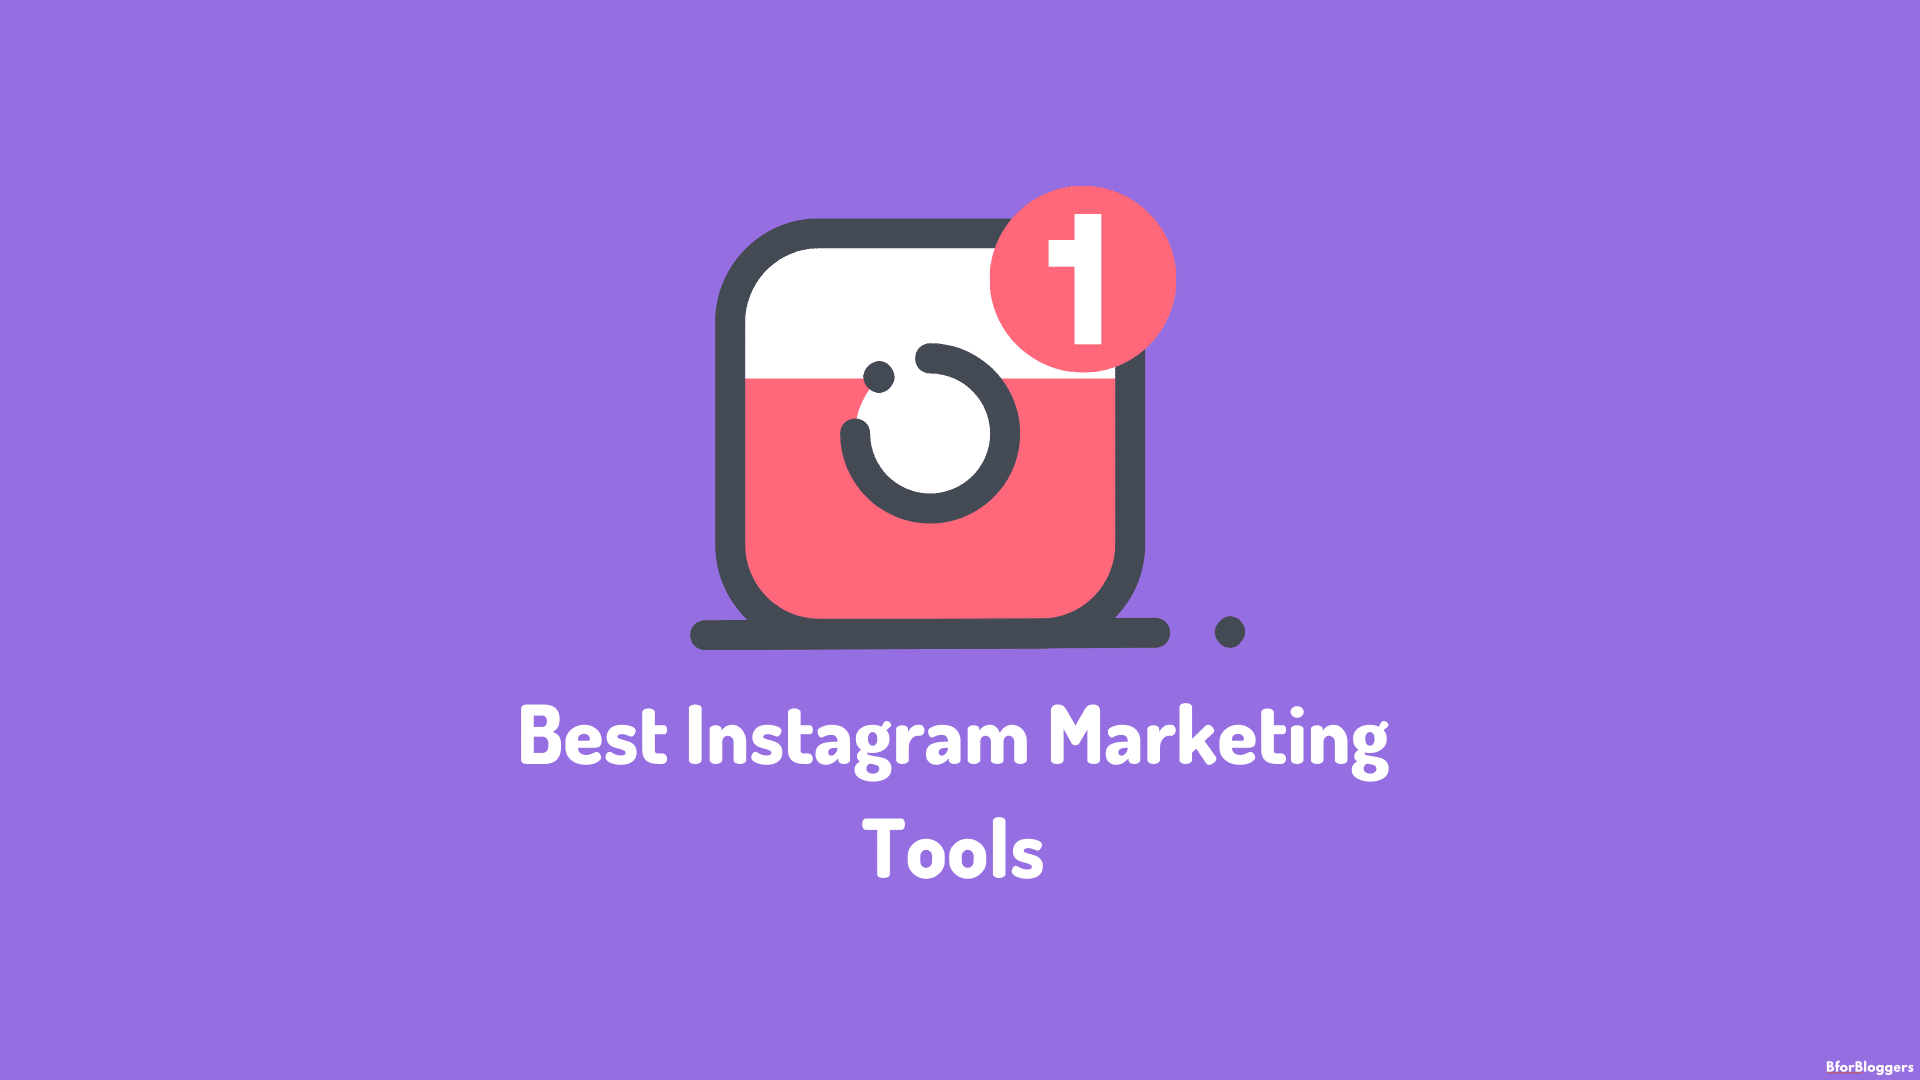 11 Best Instagram Marketing & Scheduling Tools